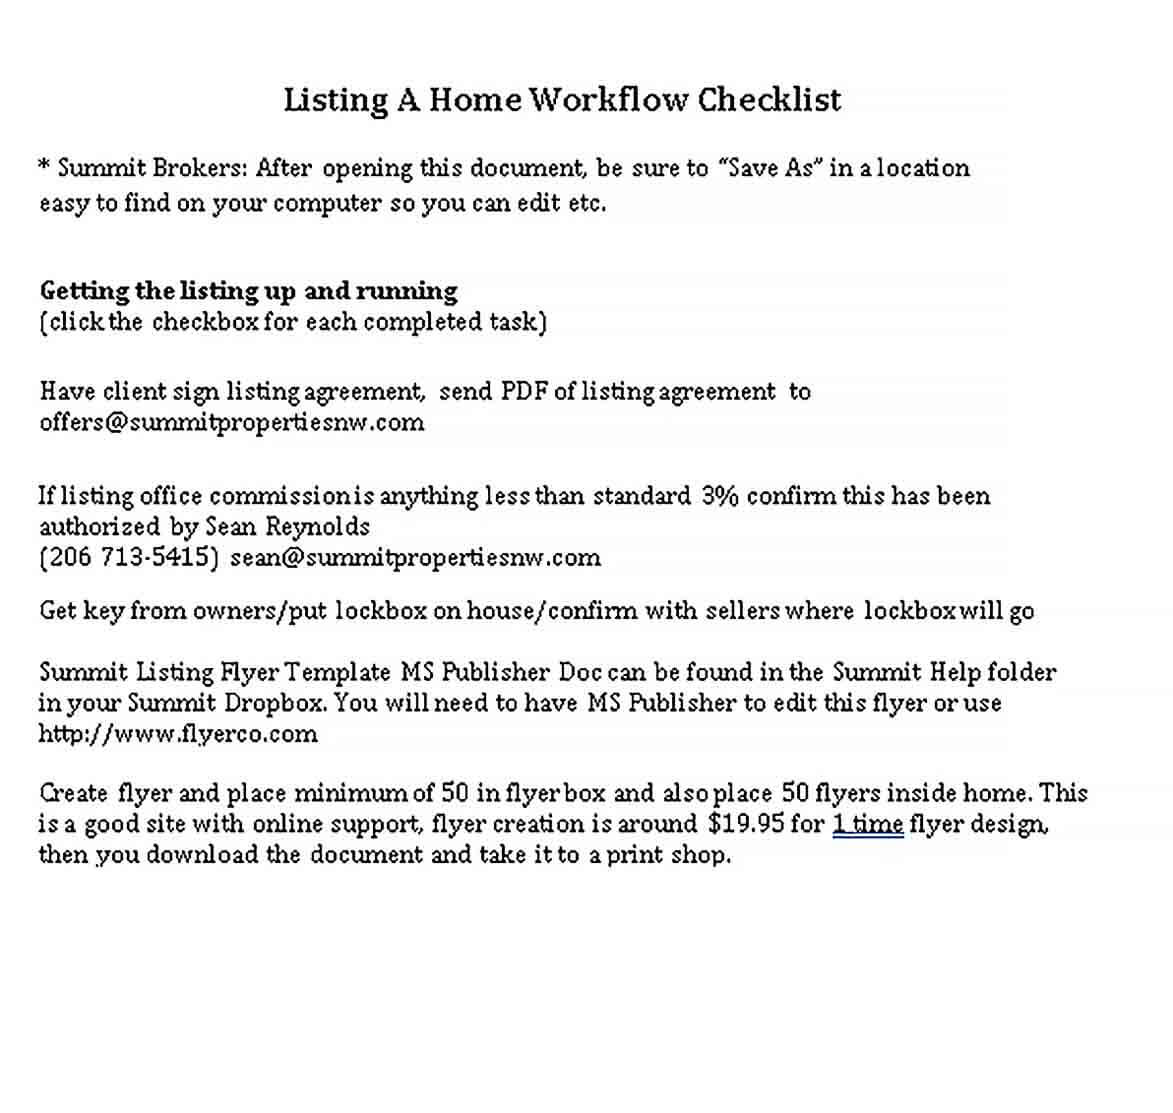 Sample Home Workflow Checklist